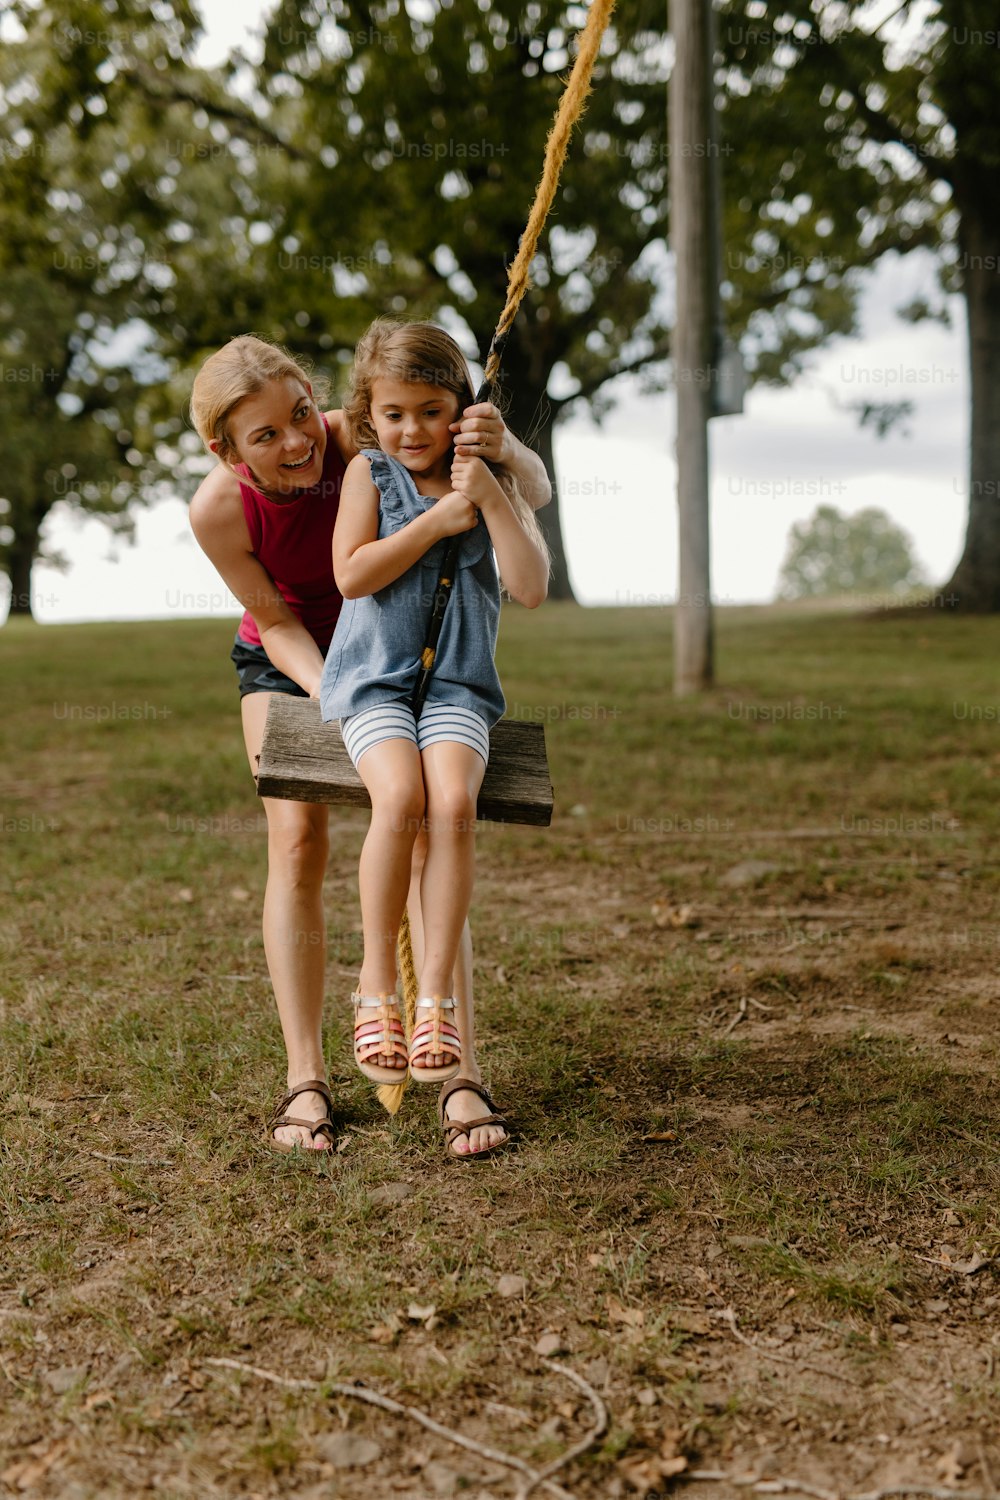 공원에서 그네를 타고 놀고 있는 두 어린 소녀